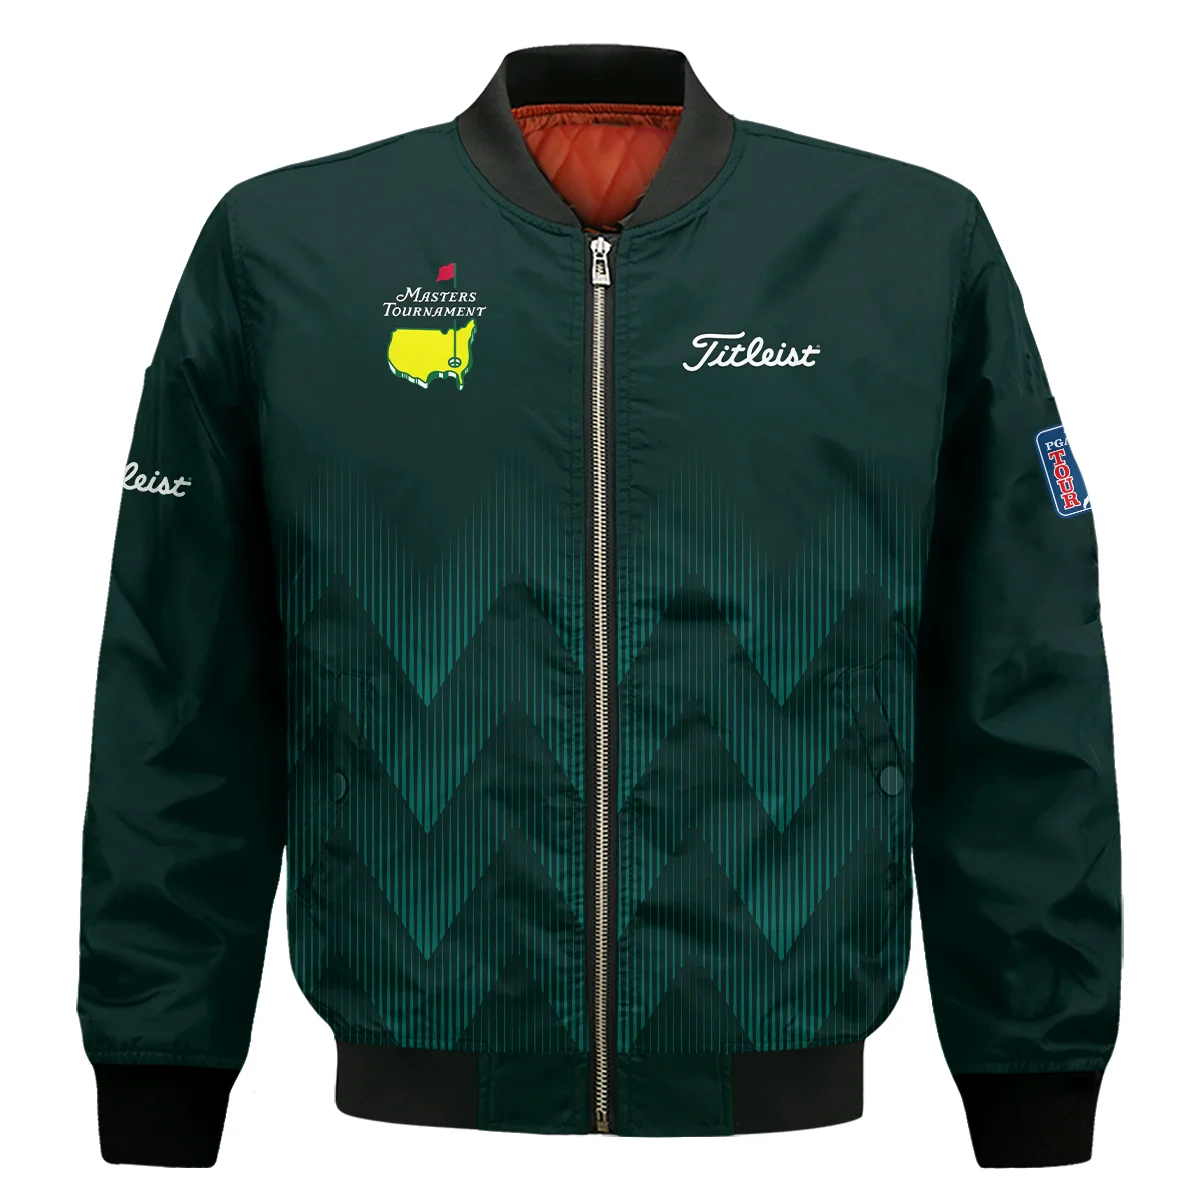 Masters Tournament Golf Titleist Unisex Sweatshirt Zigzag Pattern Dark Green Golf Sports All Over Print Sweatshirt